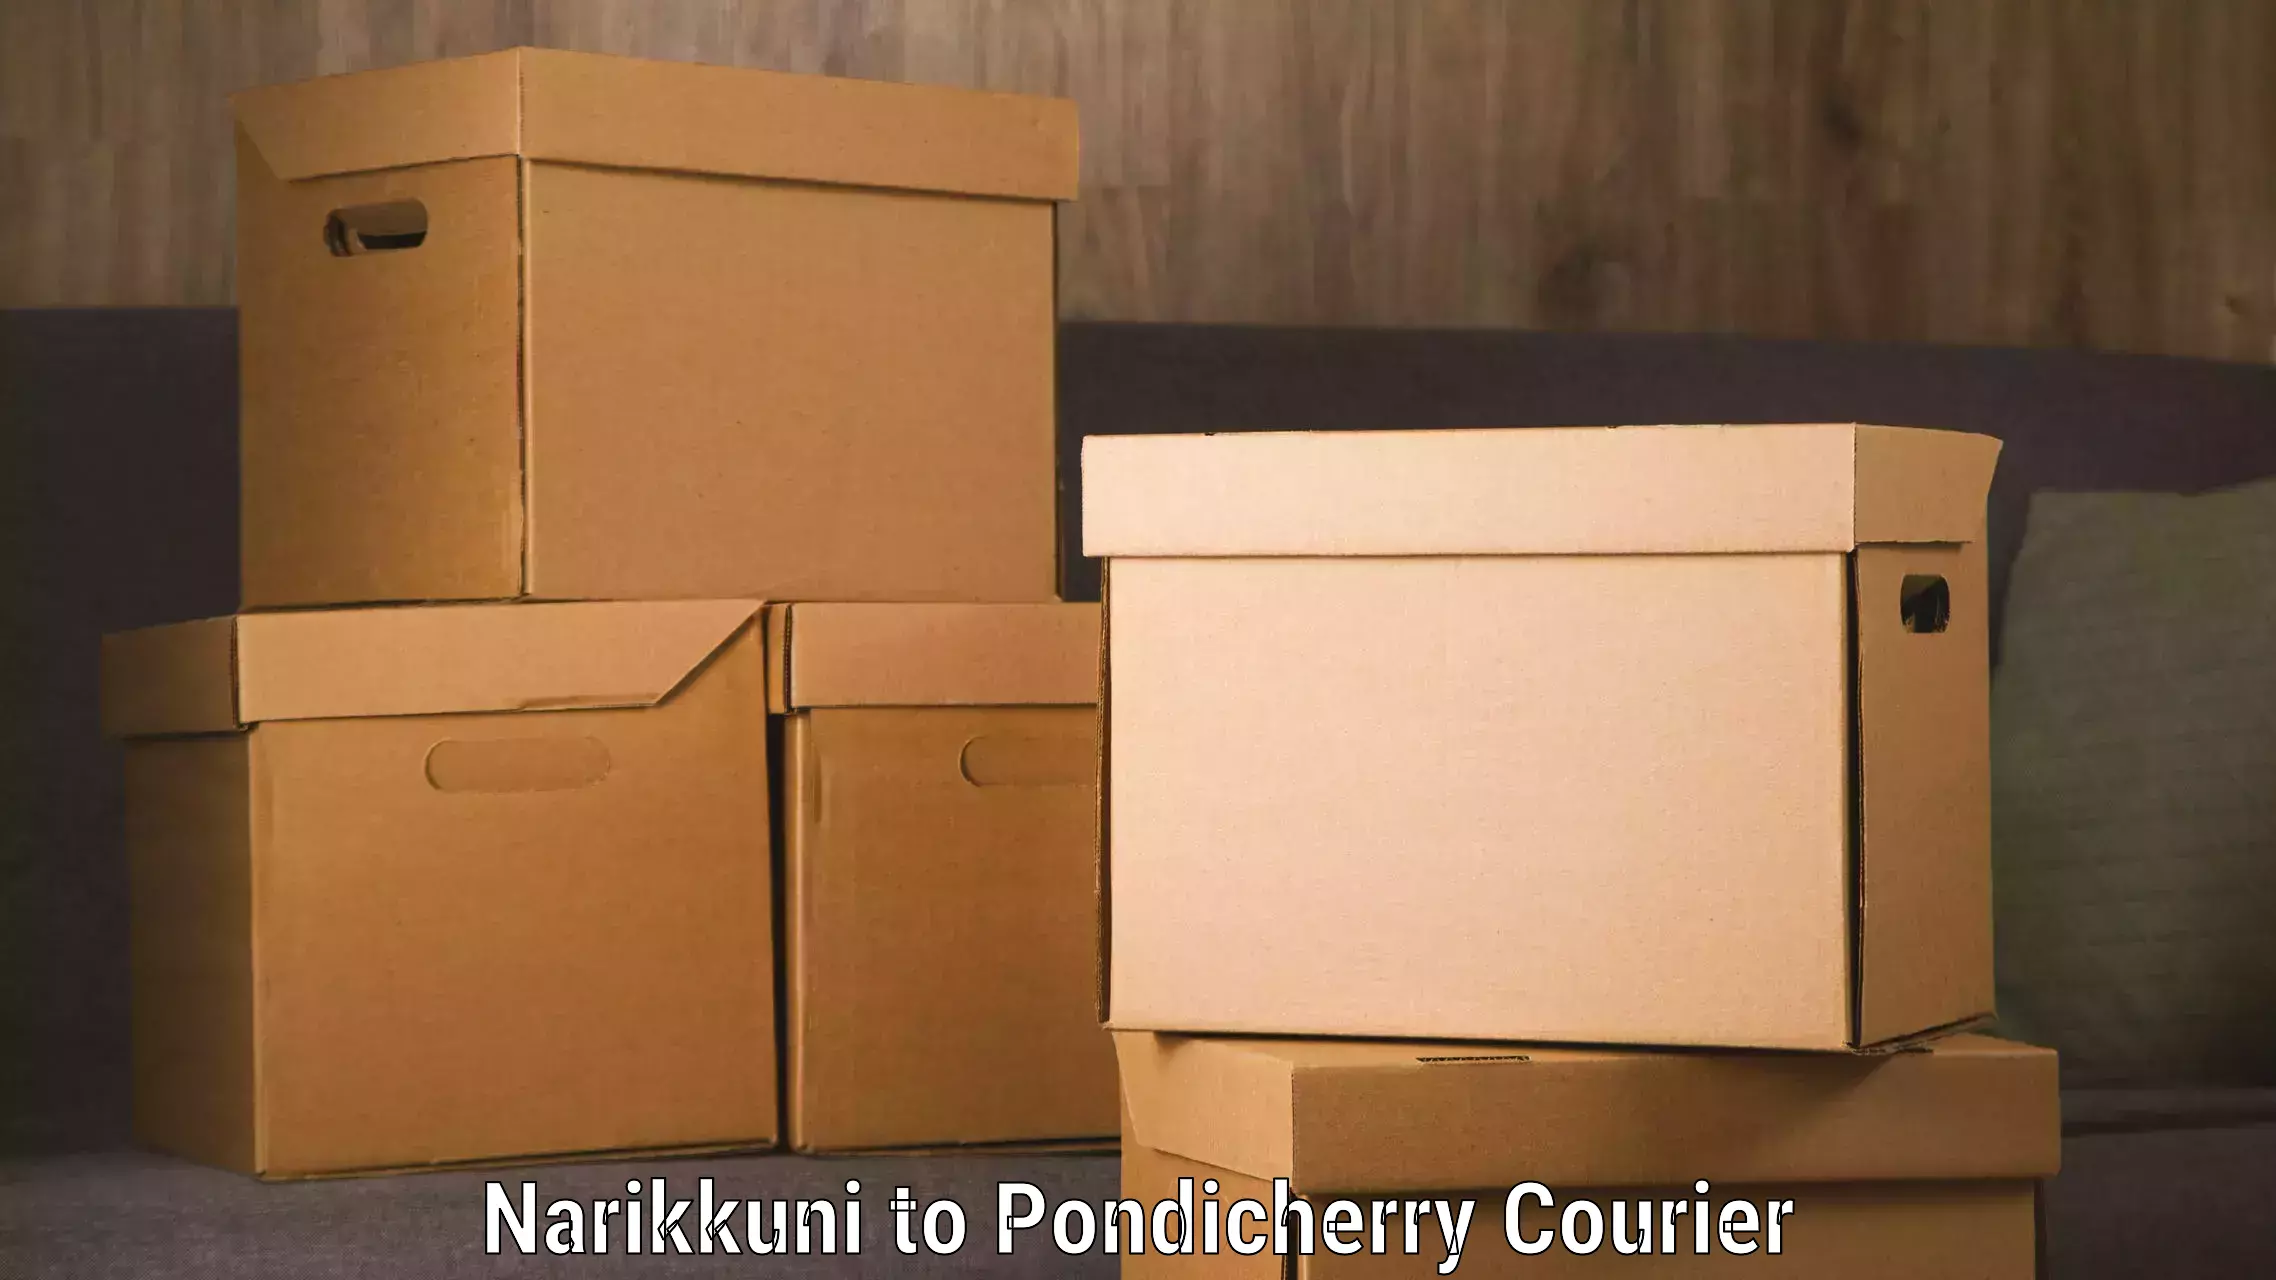 Global shipping solutions Narikkuni to Pondicherry University